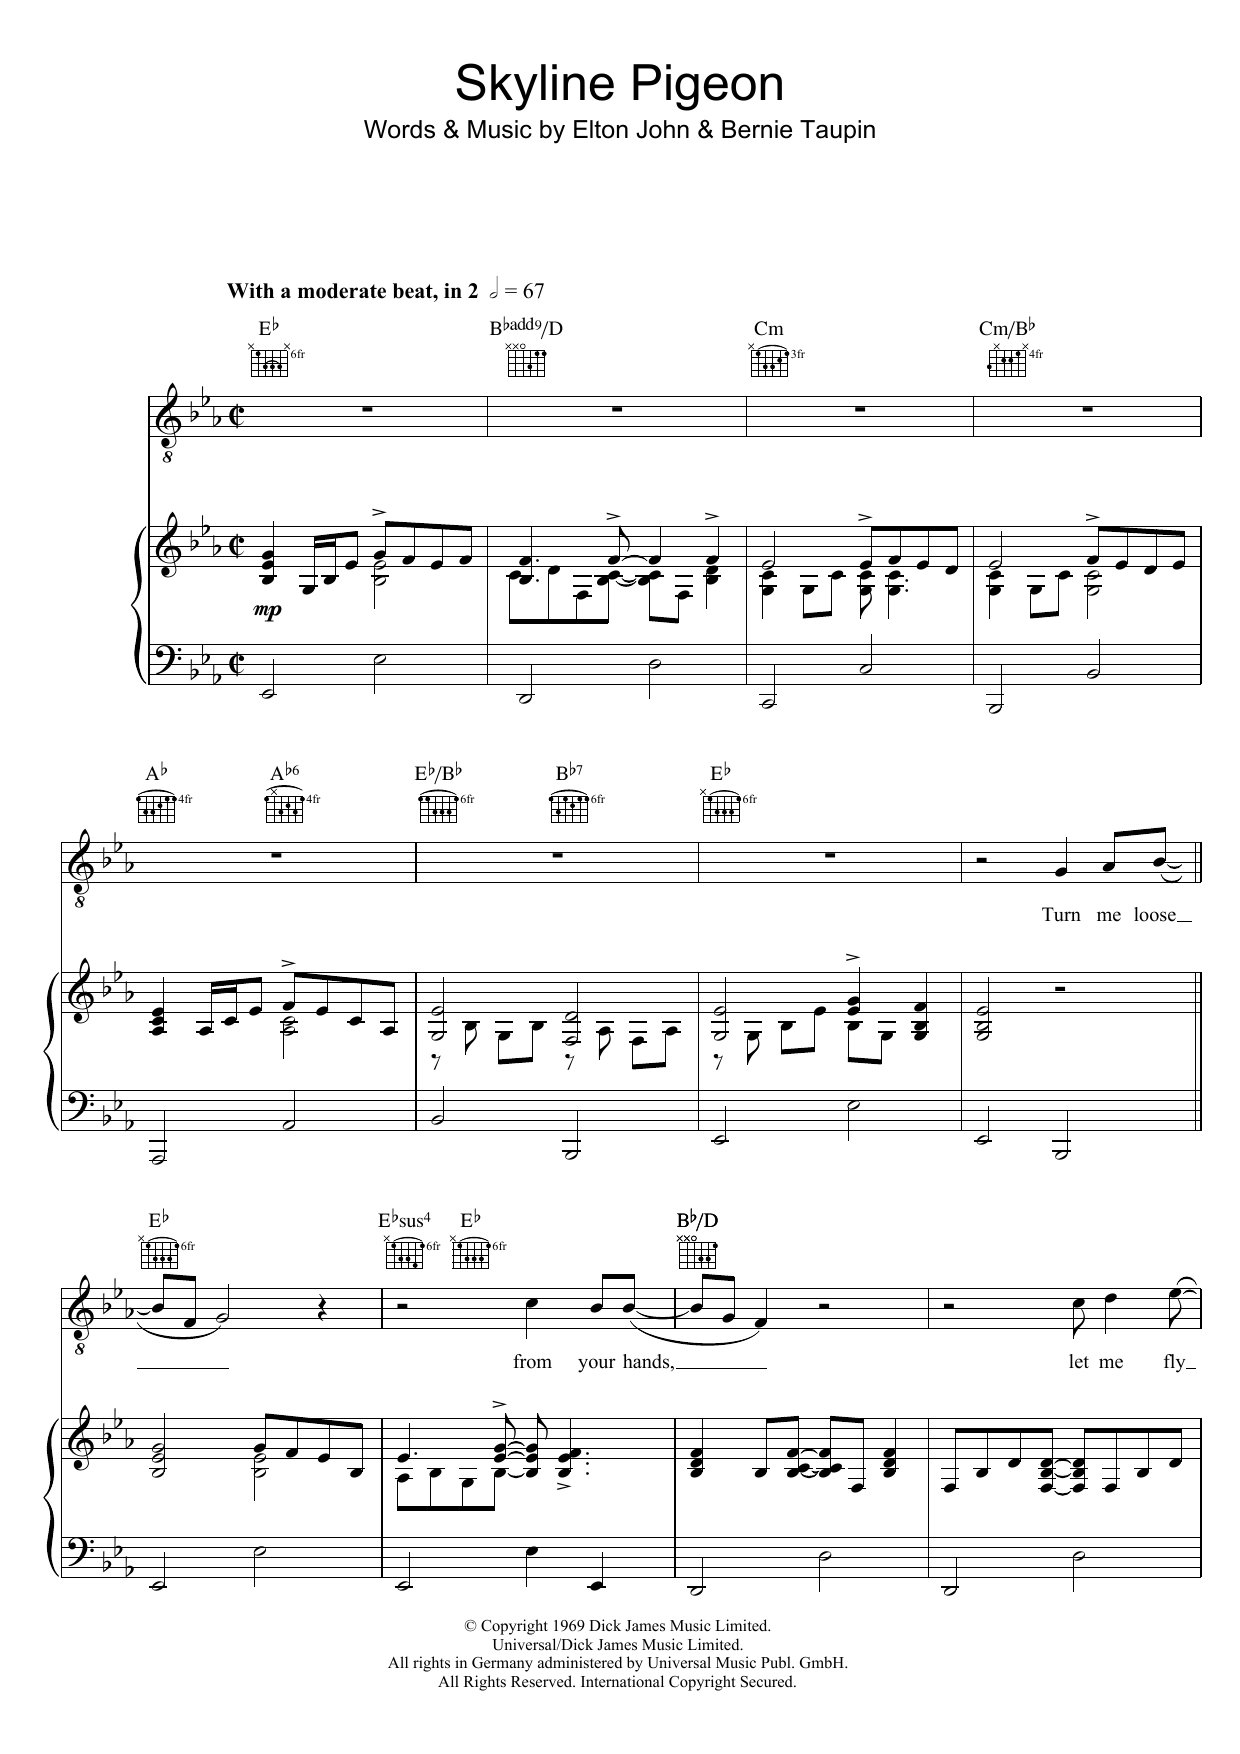 Elton John Skyline Pigeon Sheet Music Notes & Chords for Lyrics & Chords - Download or Print PDF